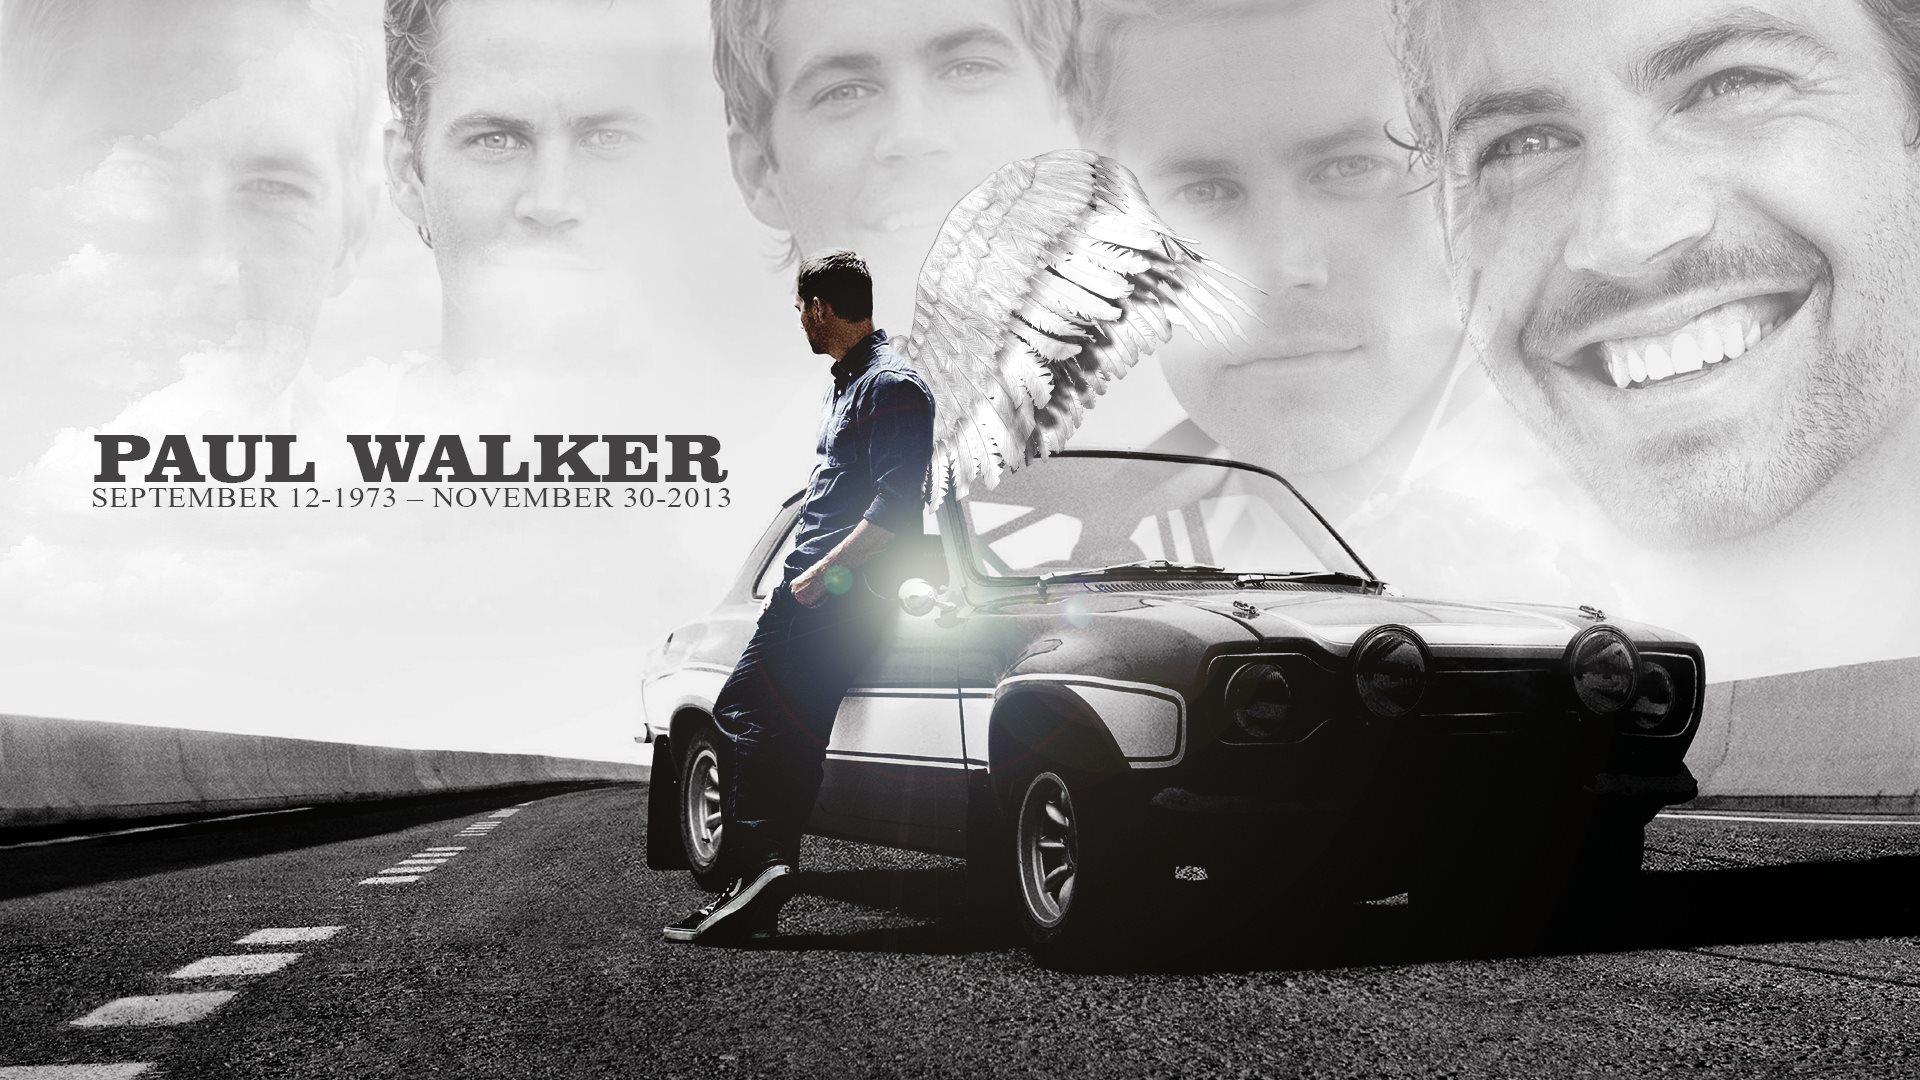 Download Paul Walker Driving His Custom Muscle Car Wallpaper  Wallpapers com